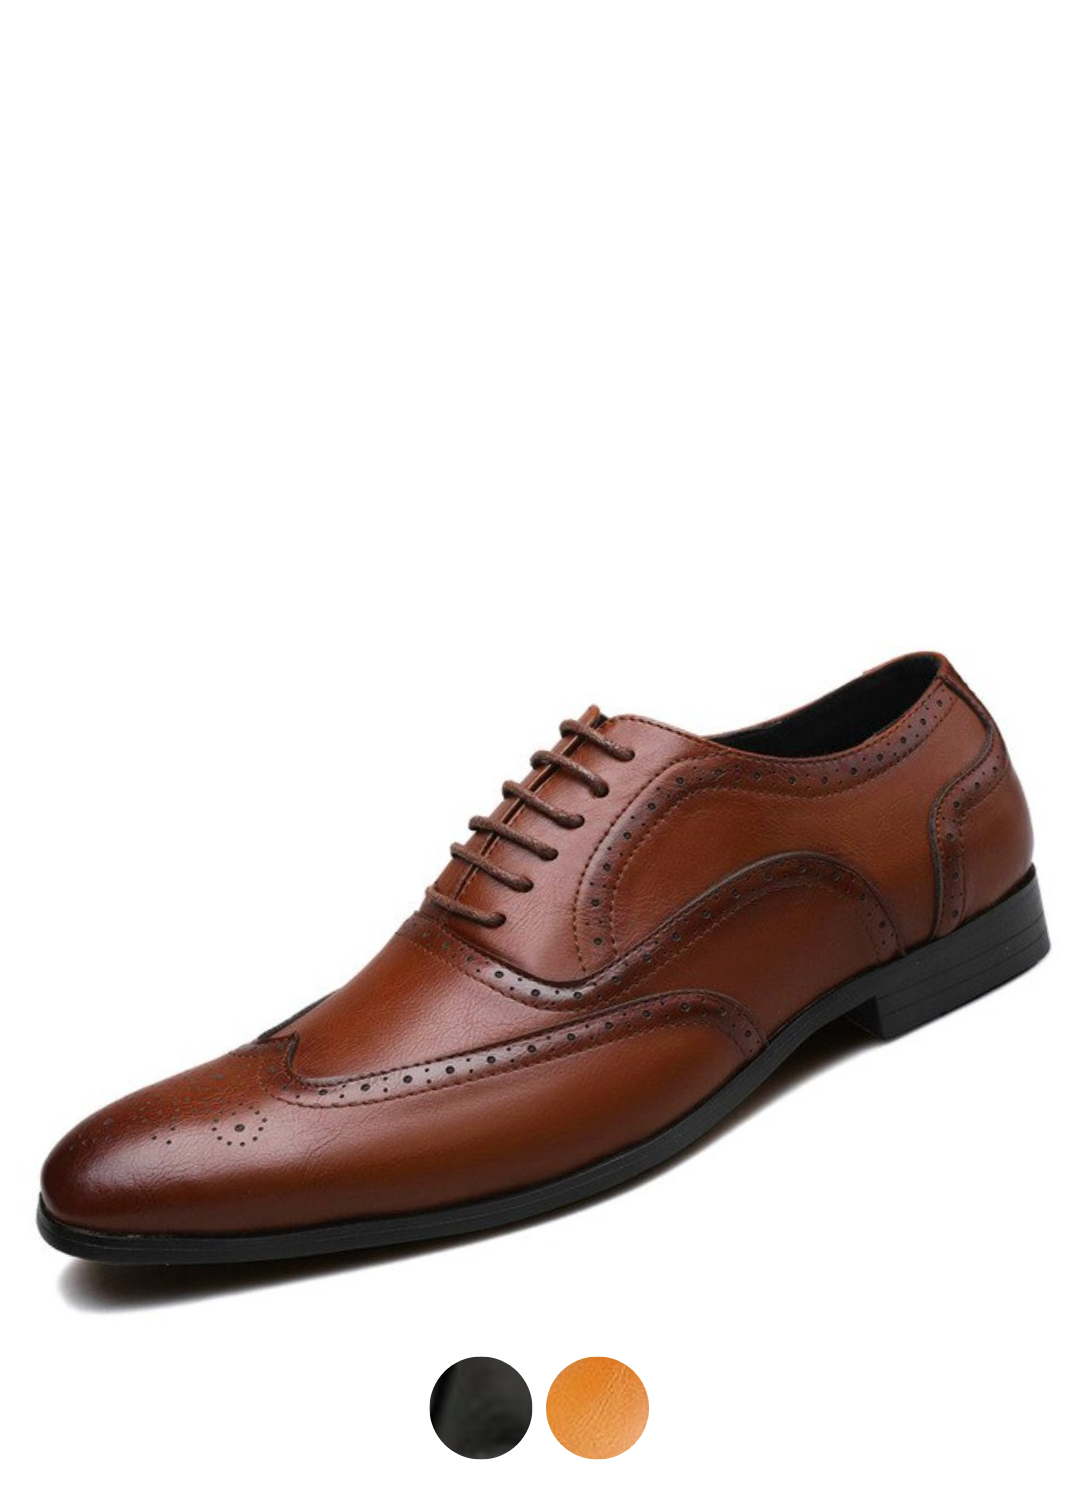 Bruno Men's Loafer Casual Shoes | Ultrasellershoes.com – Ultra Seller Shoes